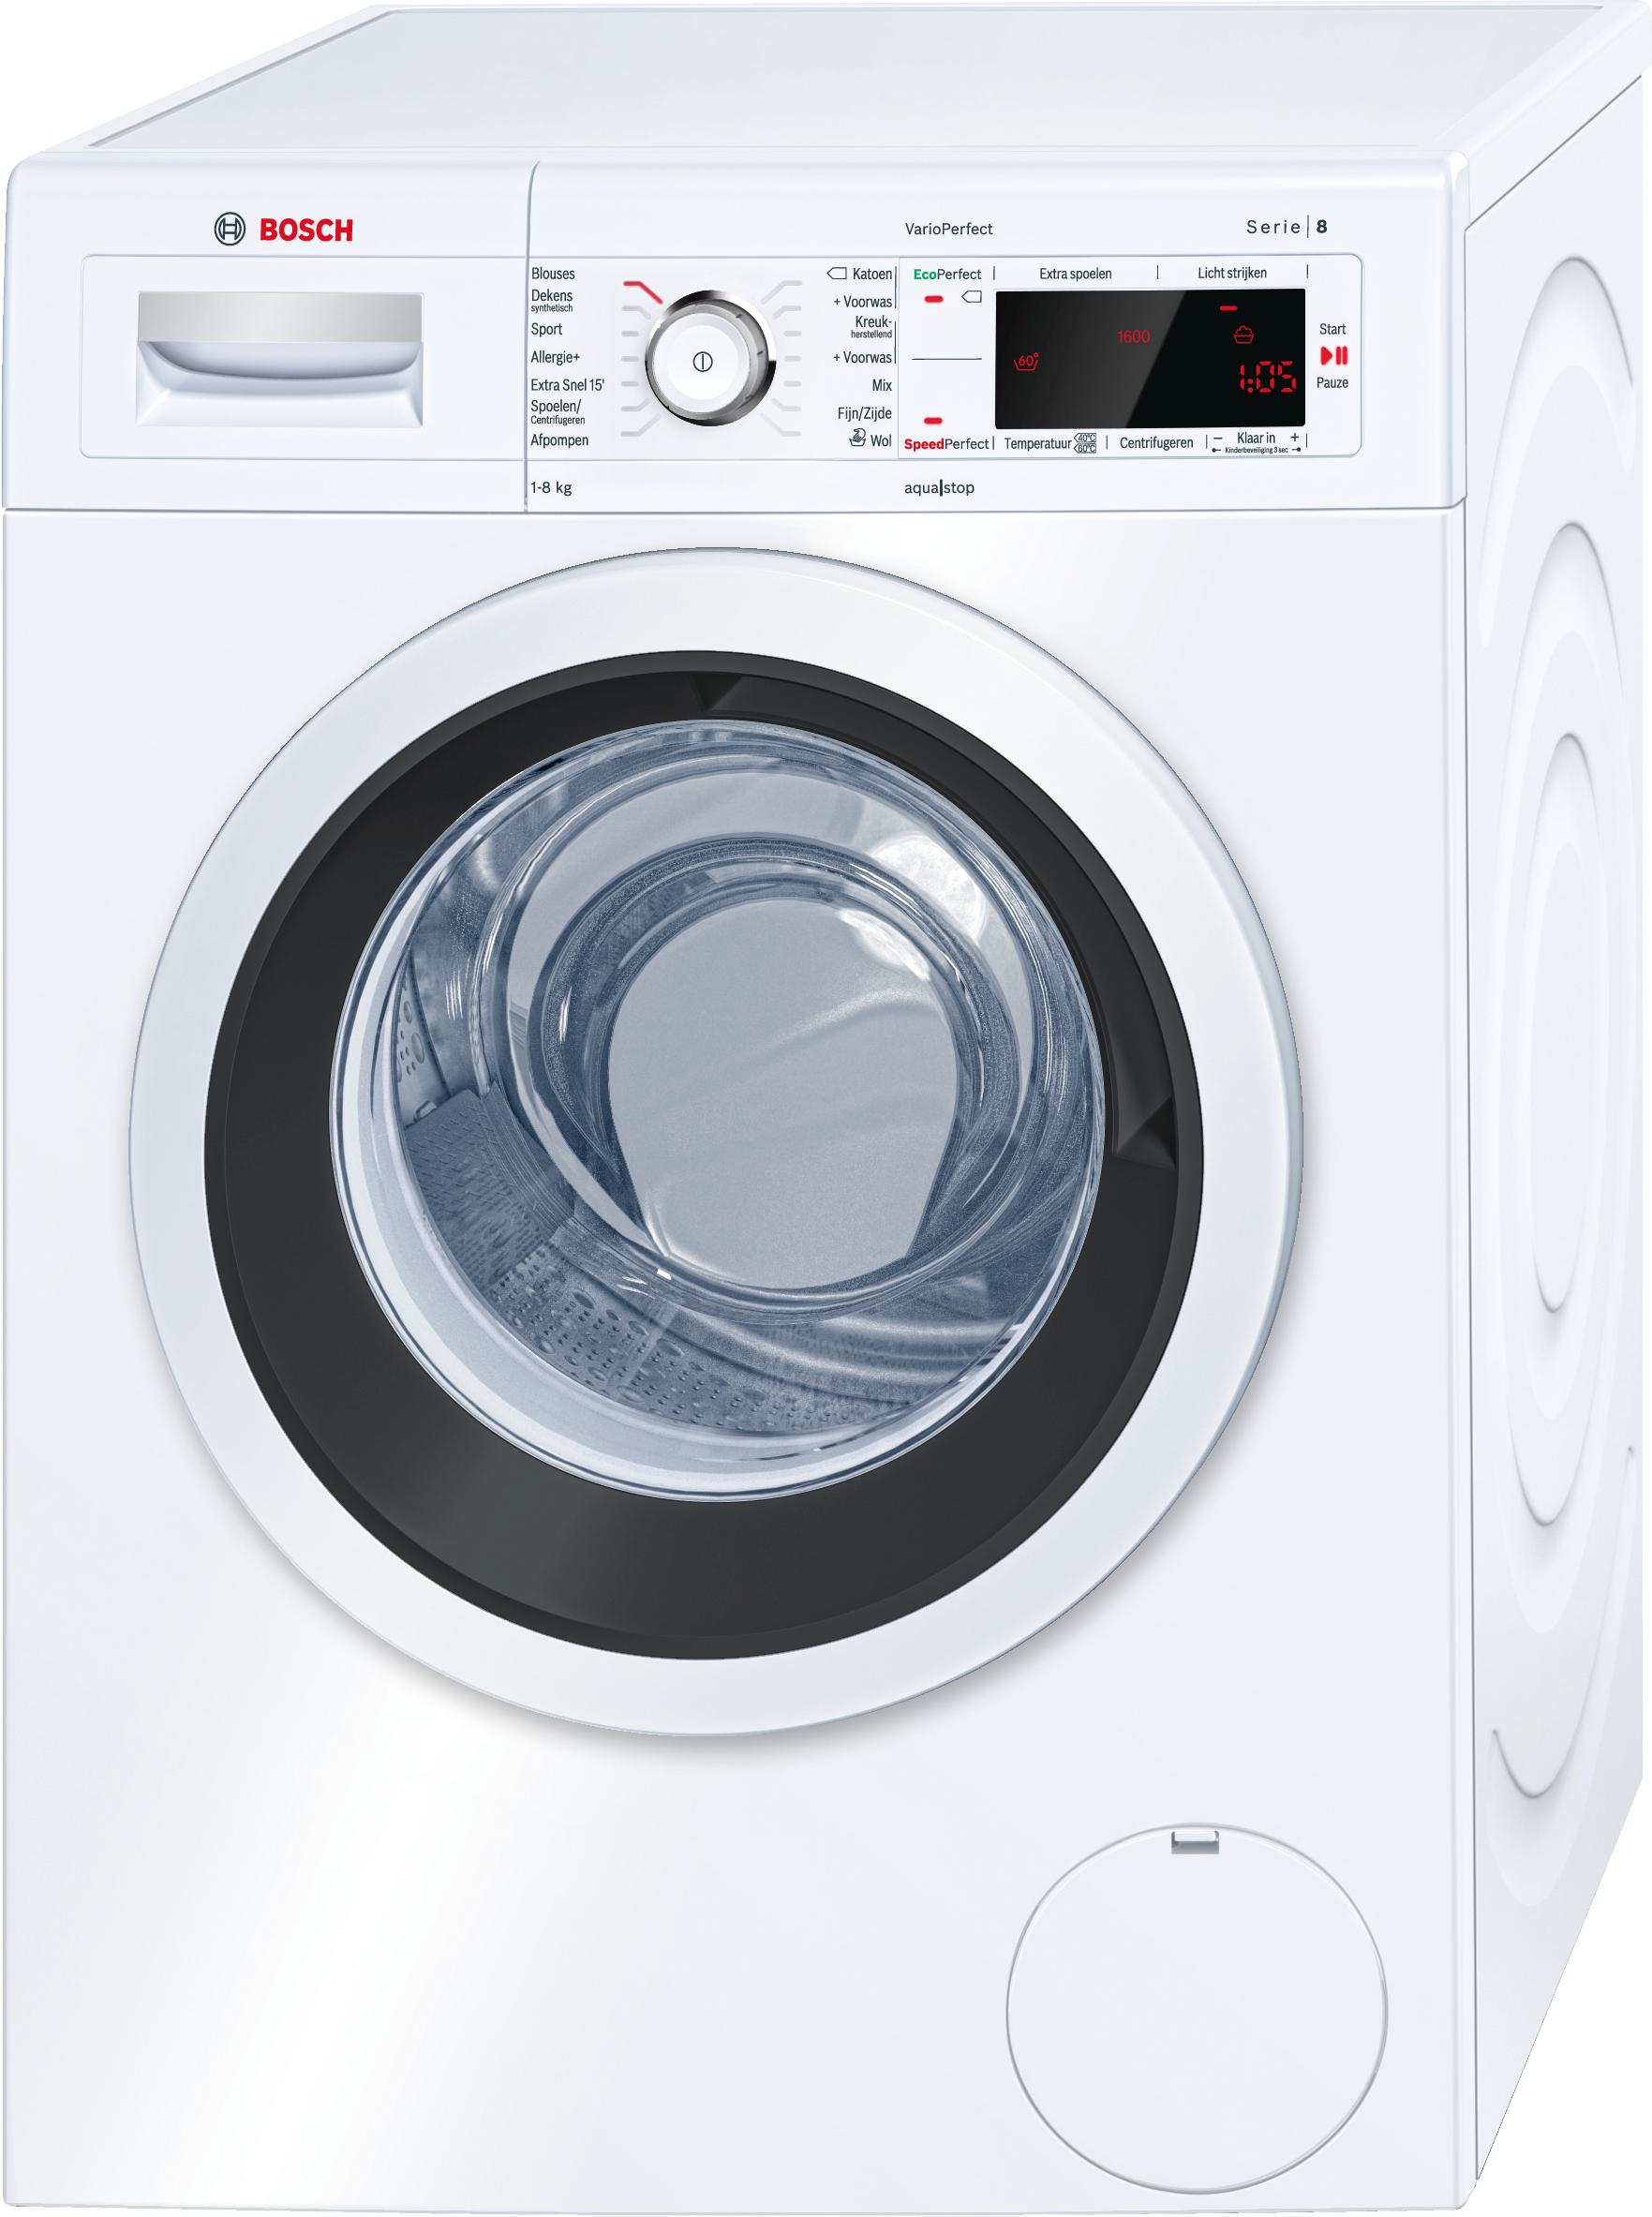 Tiêu chí để chọn một chiếc máy giặt phù hợp